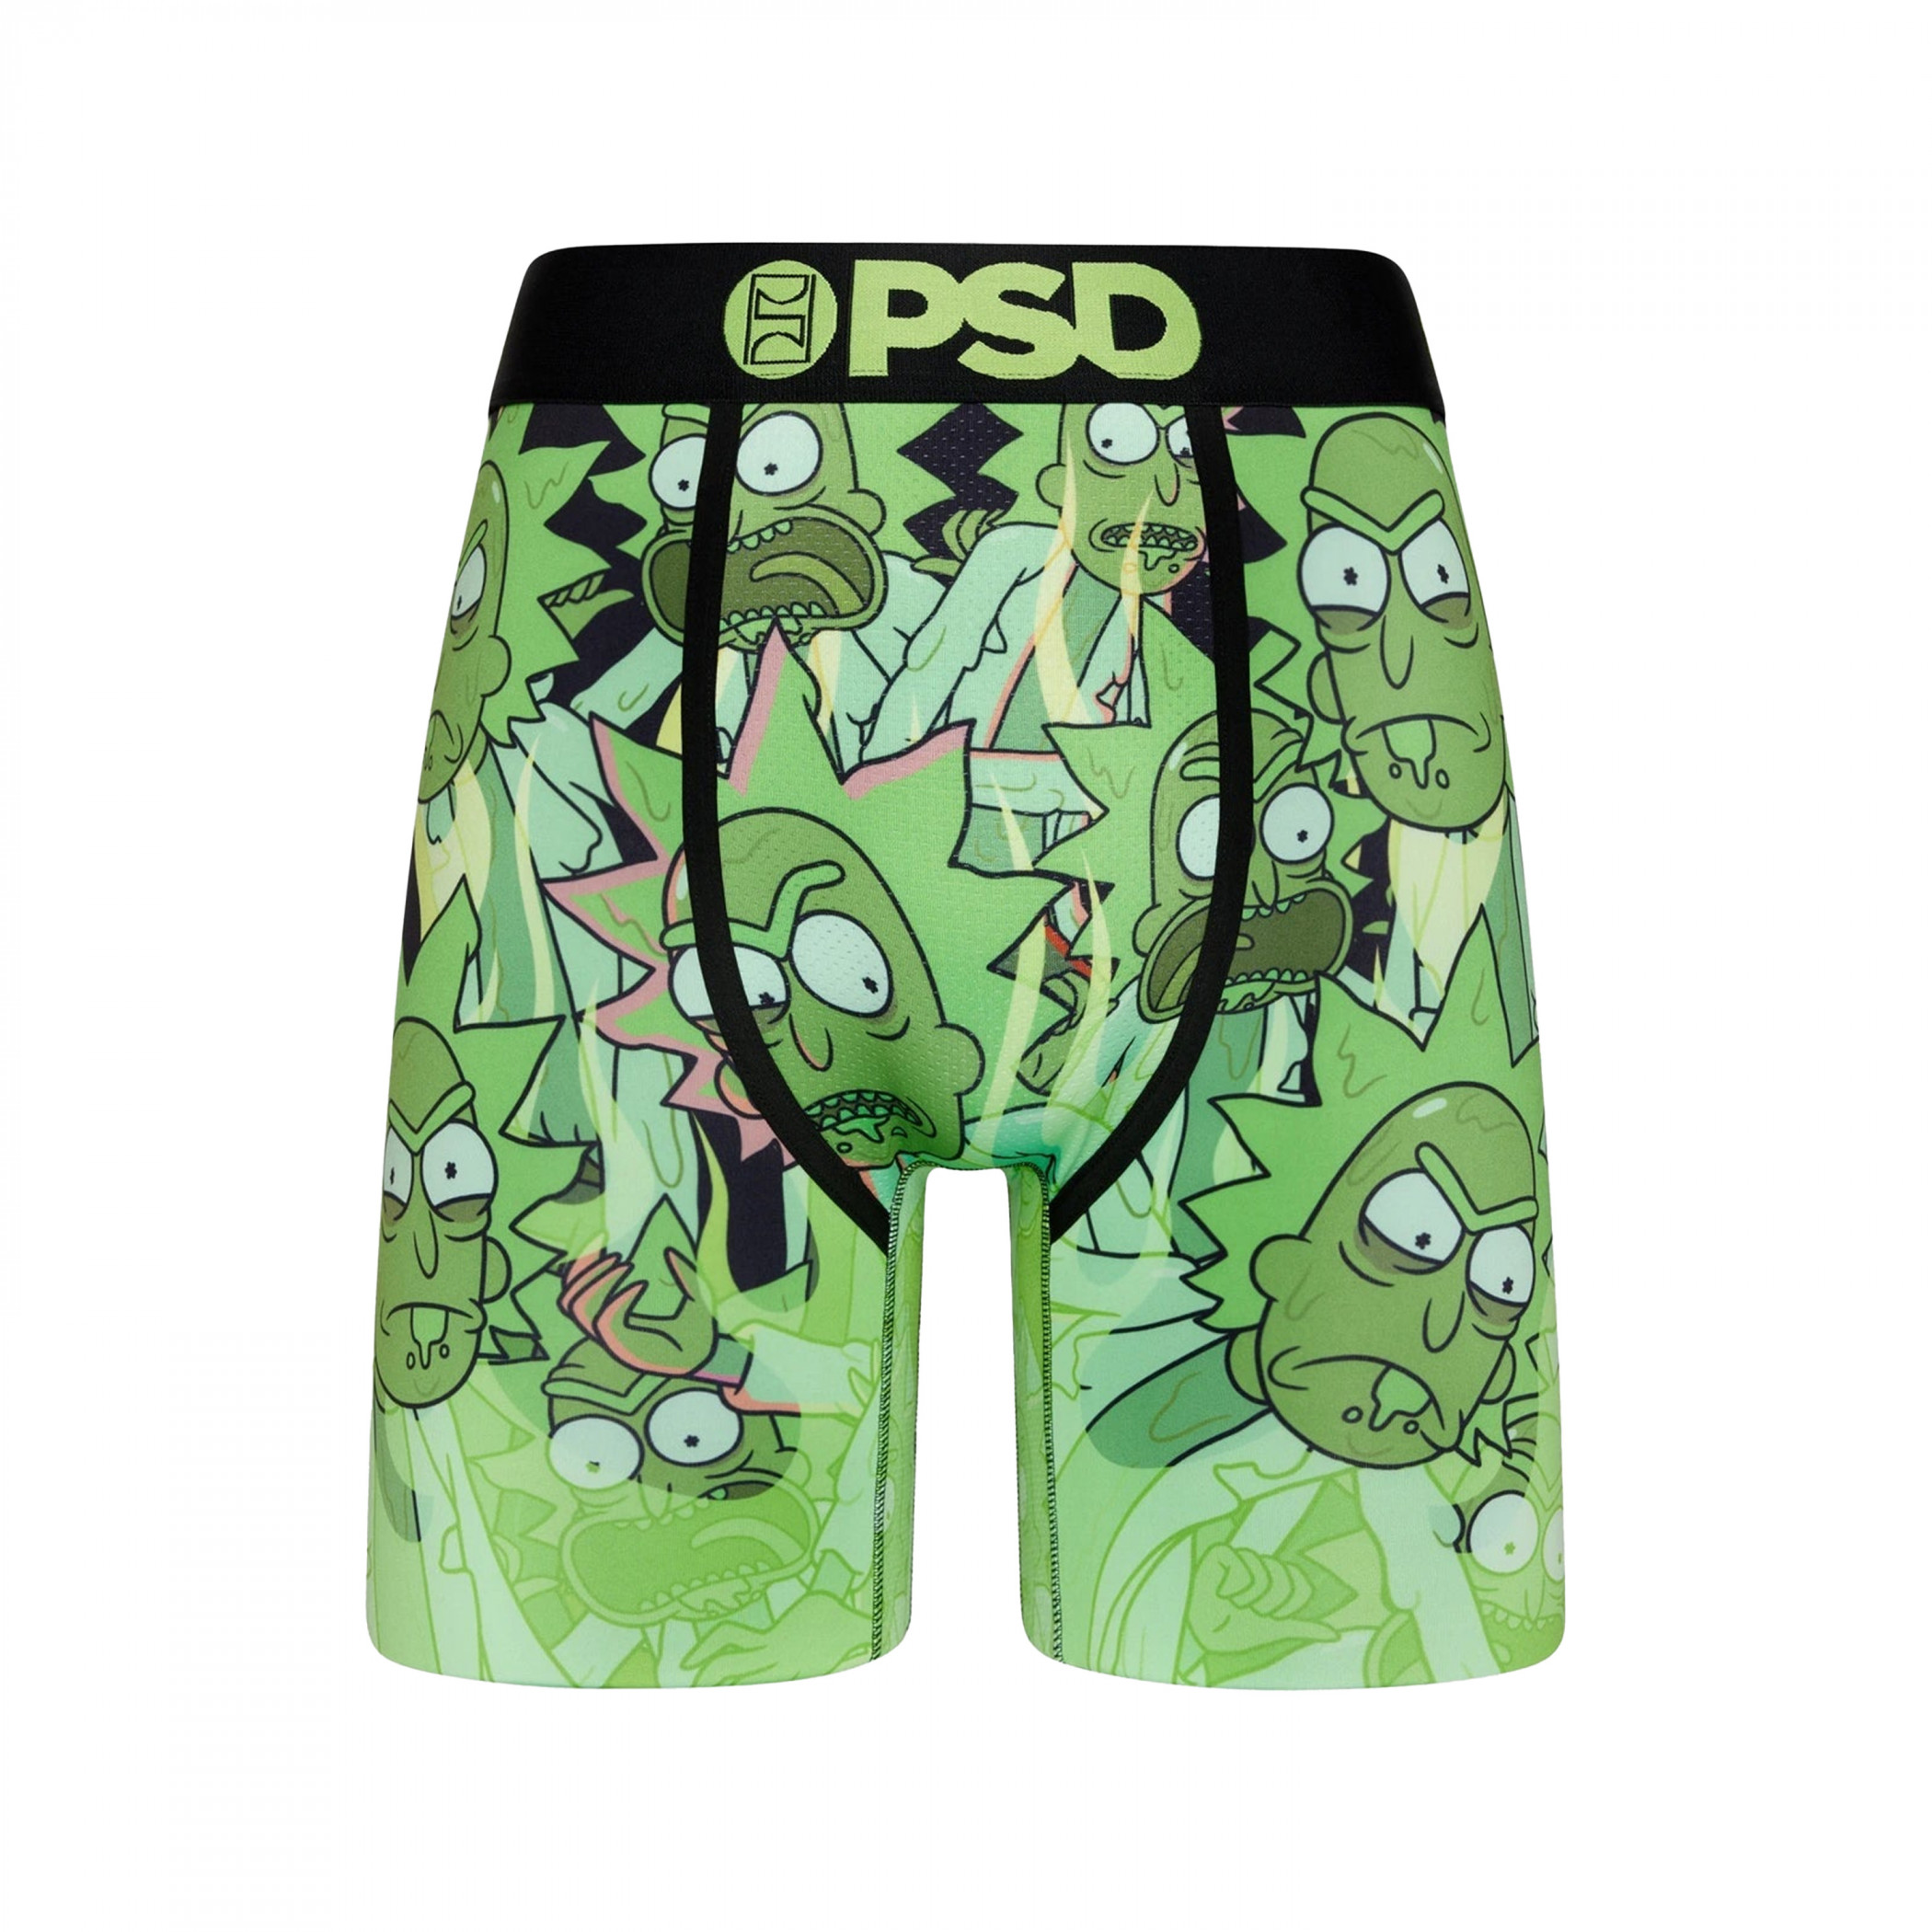 Pickle Rick - PSD Underwear